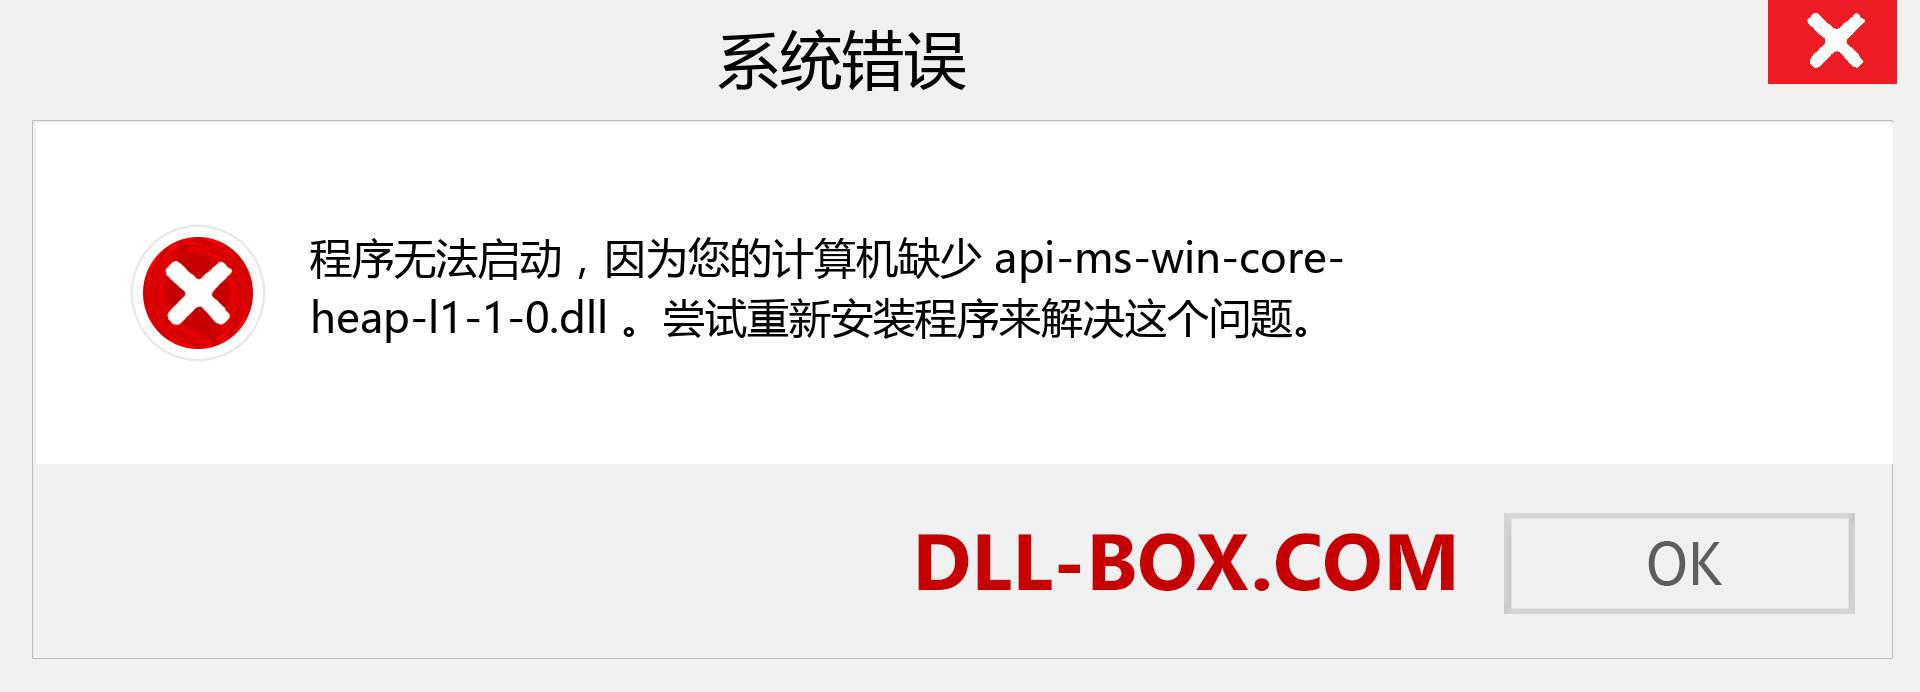 api-ms-win-core-heap-l1-1-0.dll 文件丢失？。 适用于 Windows 7、8、10 的下载 - 修复 Windows、照片、图像上的 api-ms-win-core-heap-l1-1-0 dll 丢失错误